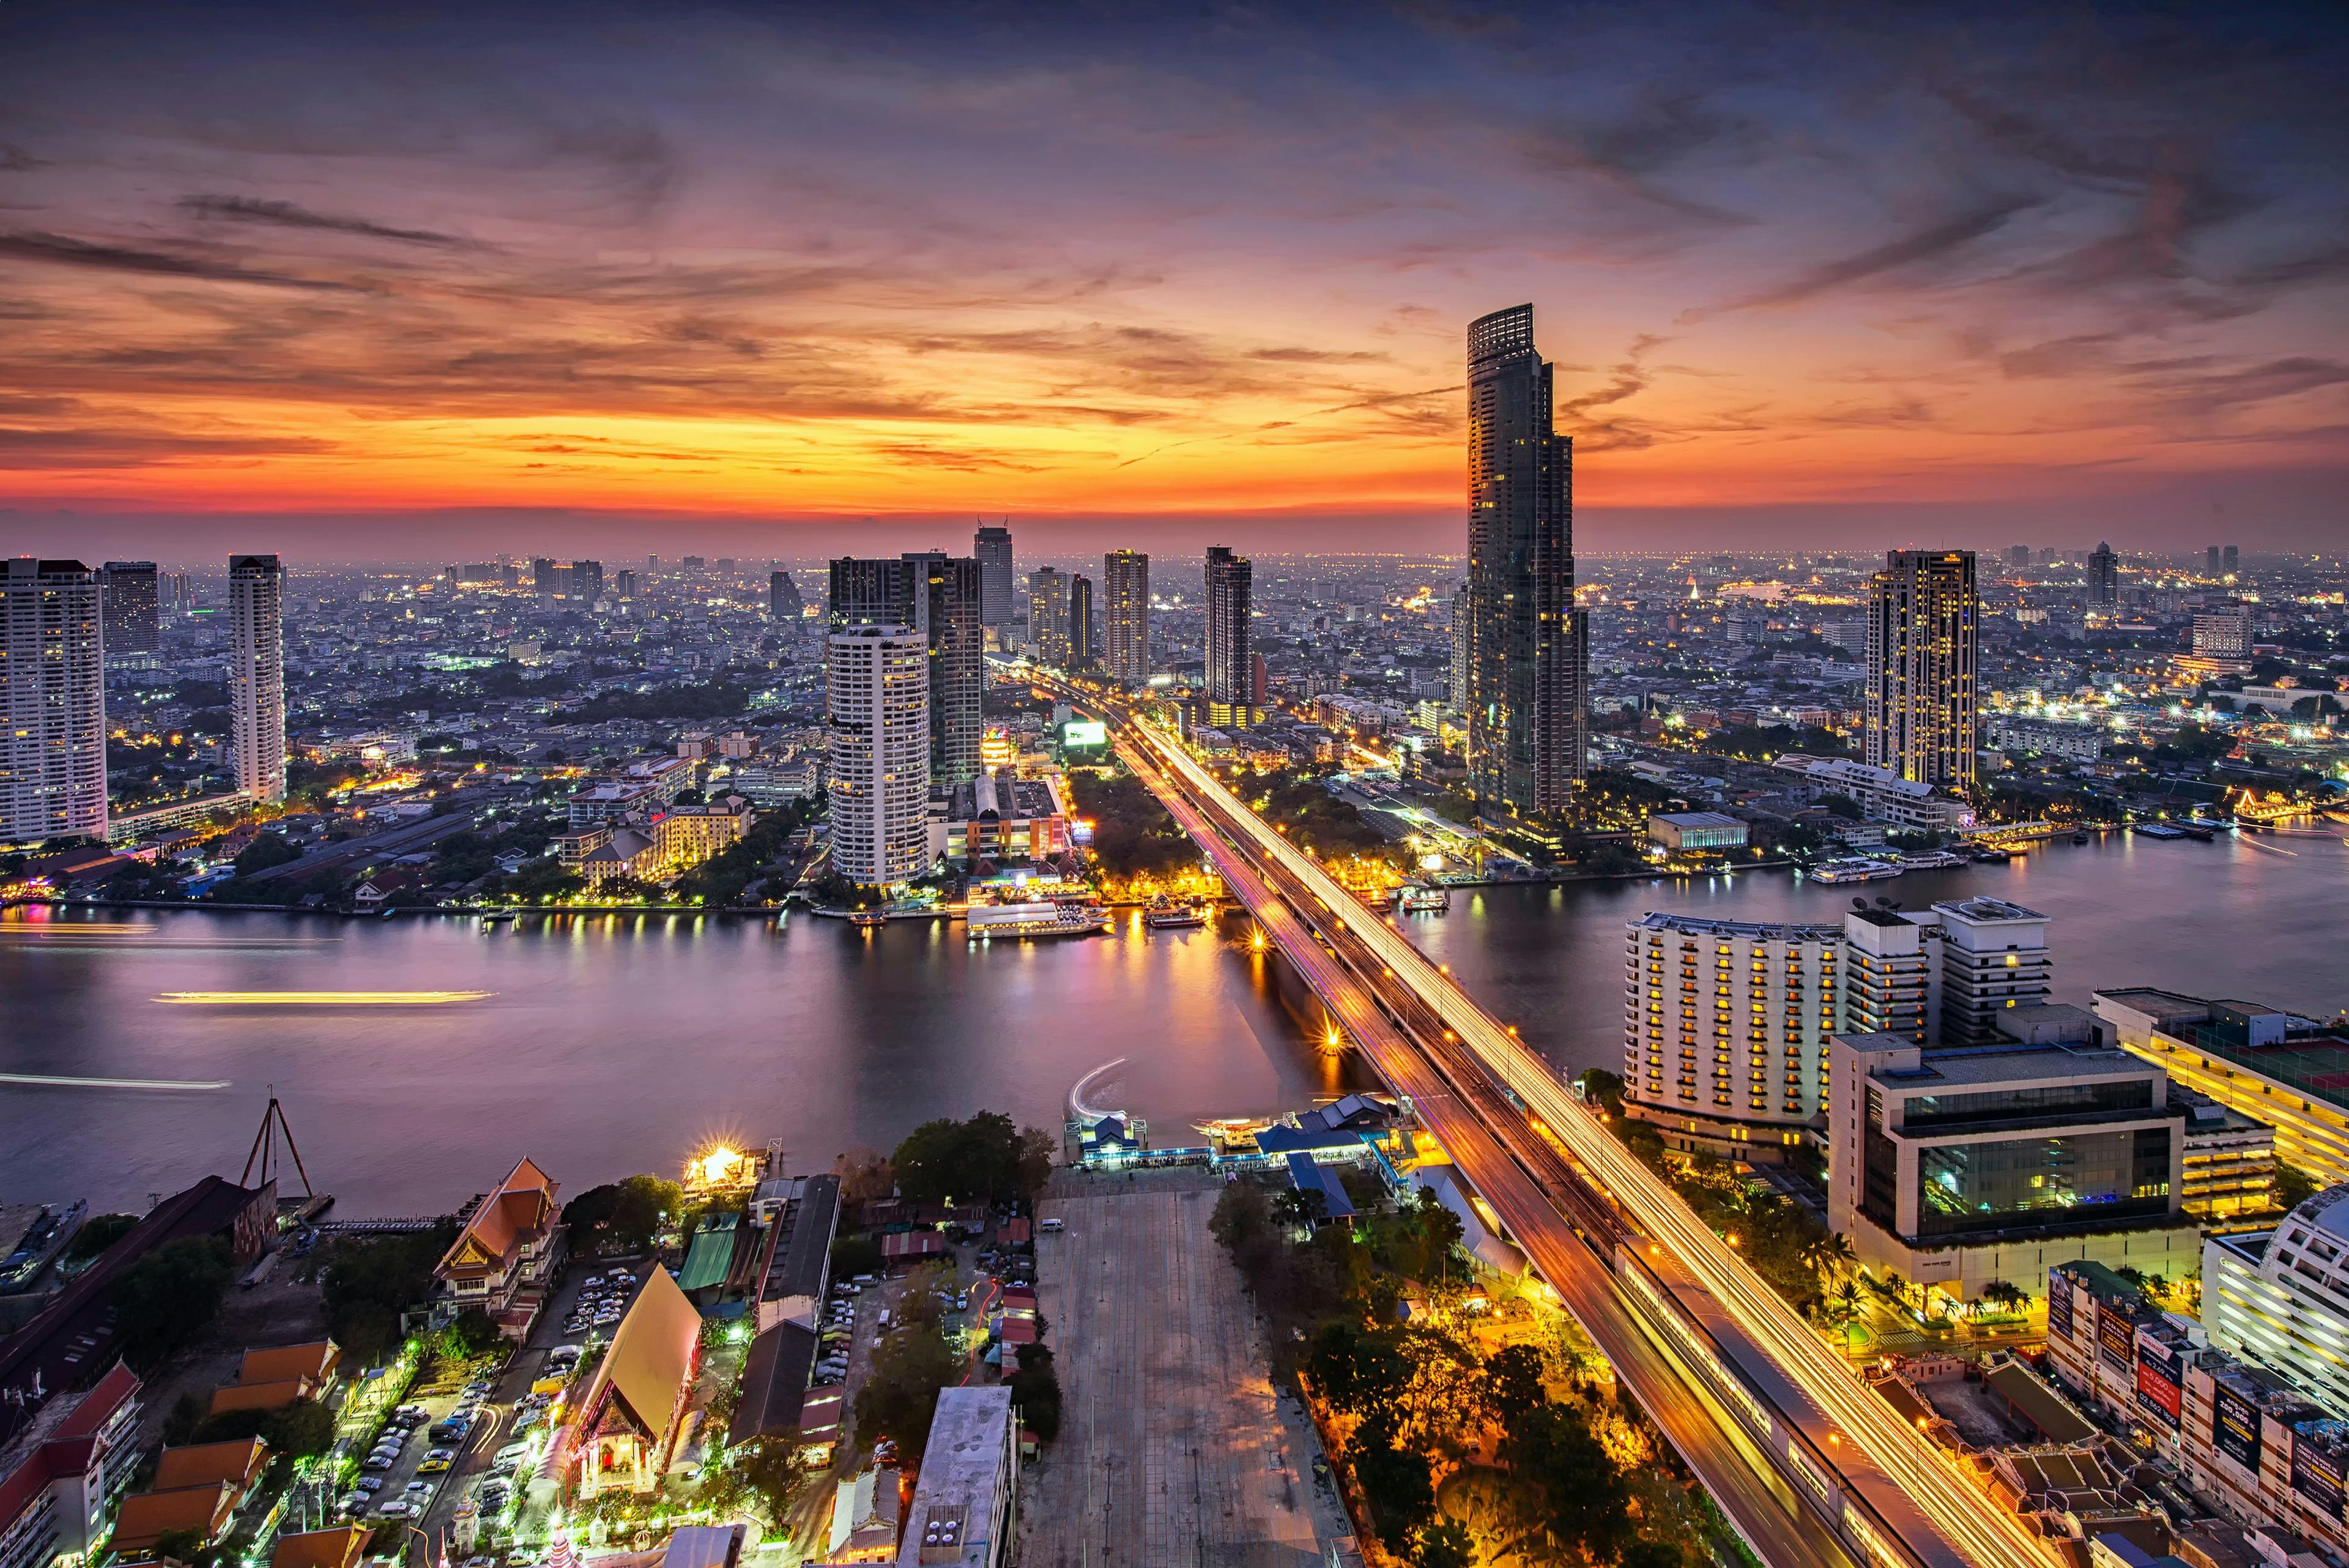 An image of the Bangkok skyline